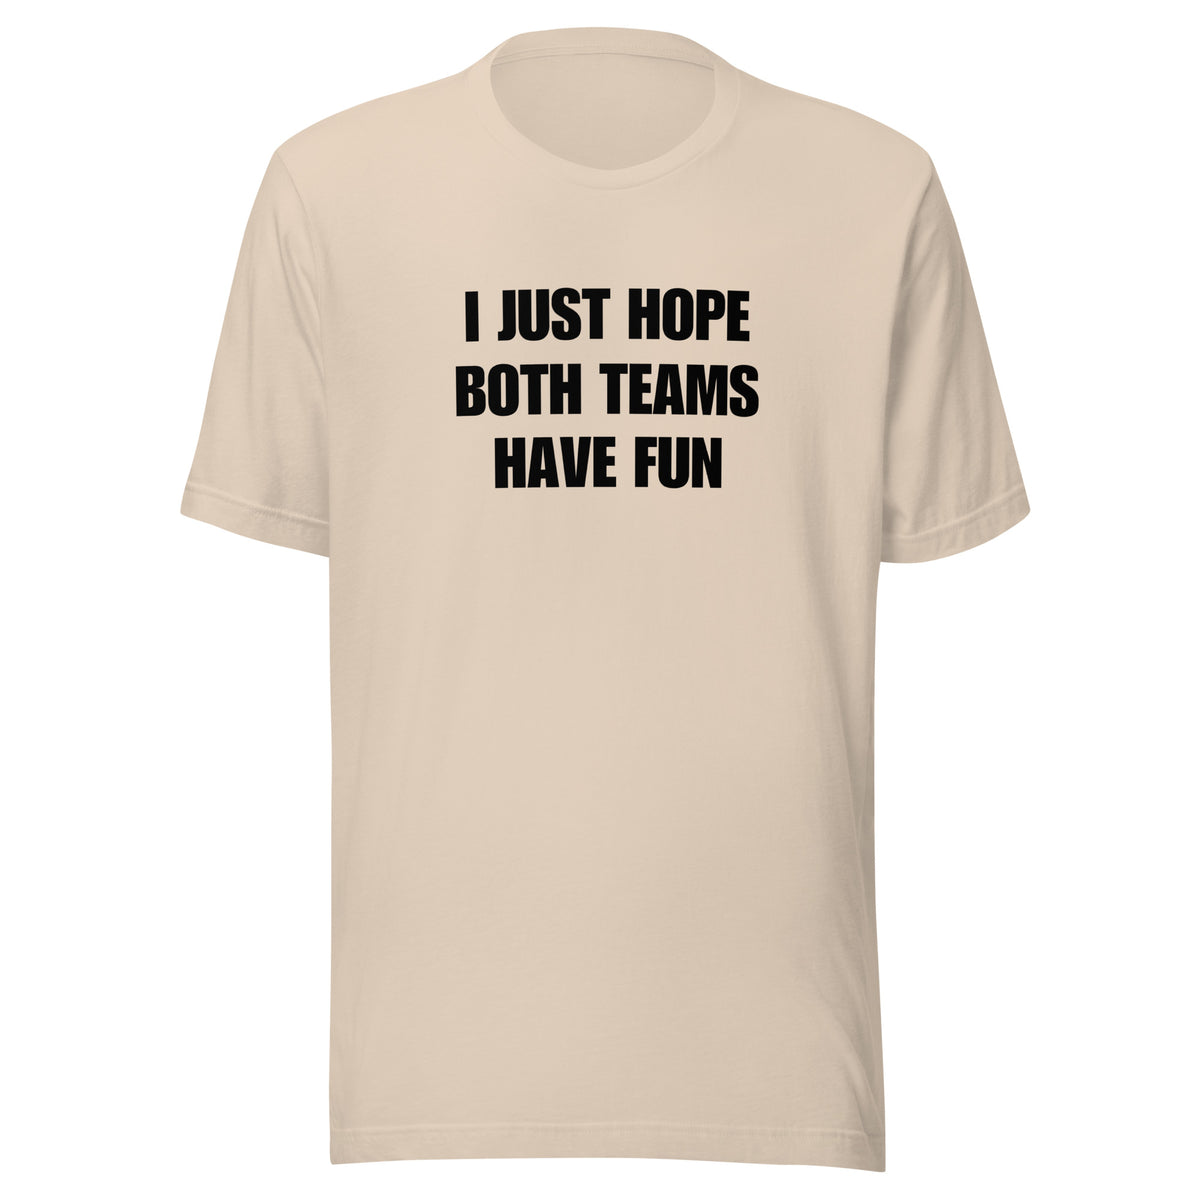 Both Teams Have Fun t-shirt